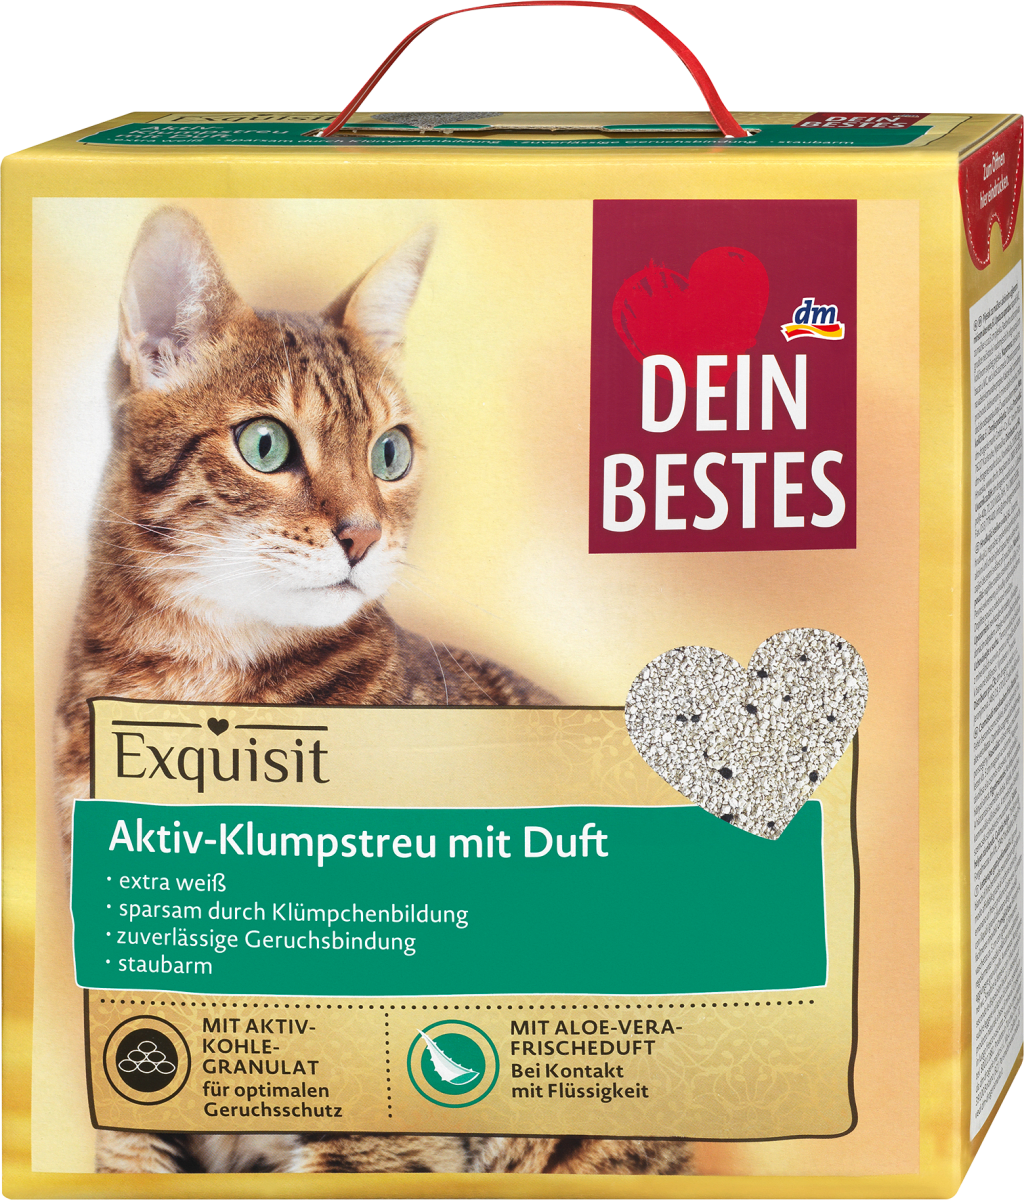 Dein Bestes Katzenstreu Aktiv-Klumpstreu mit Aloe Vera Duft, Exquisit, 6 l  dauerhaft günstig online kaufen